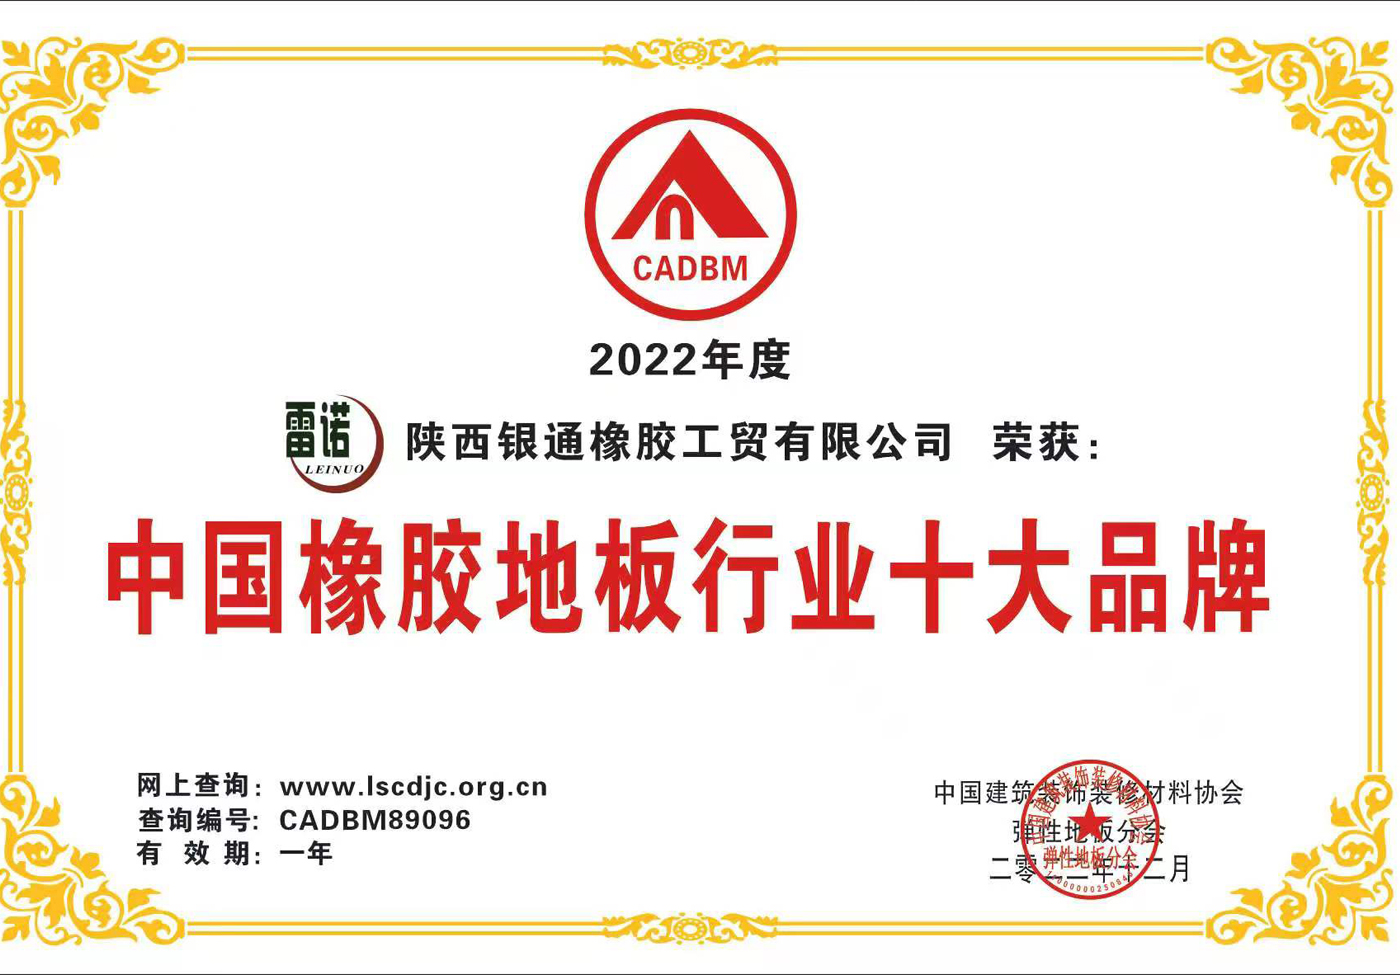 祝贺雷诺橡胶地板获得2022年中国橡胶地板行业十大品牌